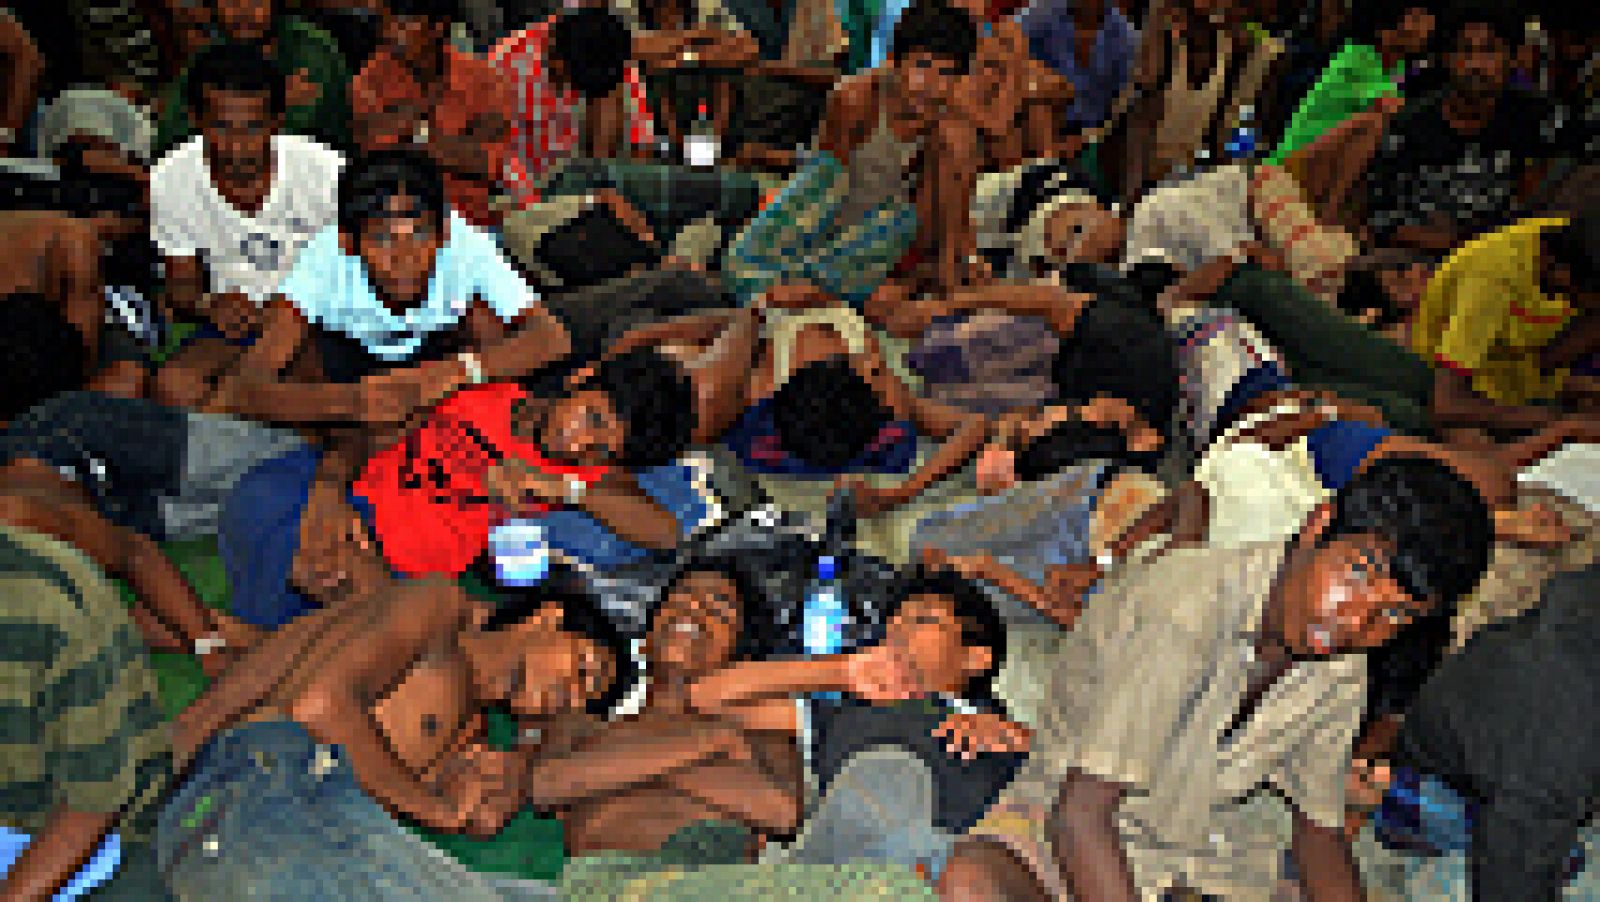 Las autoridades de Indonesia y Malasia han rescatado en las últimas horas a unos 2.000 inmigrantes, incluidos niños y mujeres, que viajaban a la deriva procedentes de Bangladesh y Myanmar en embarcaciones rudimentarias.